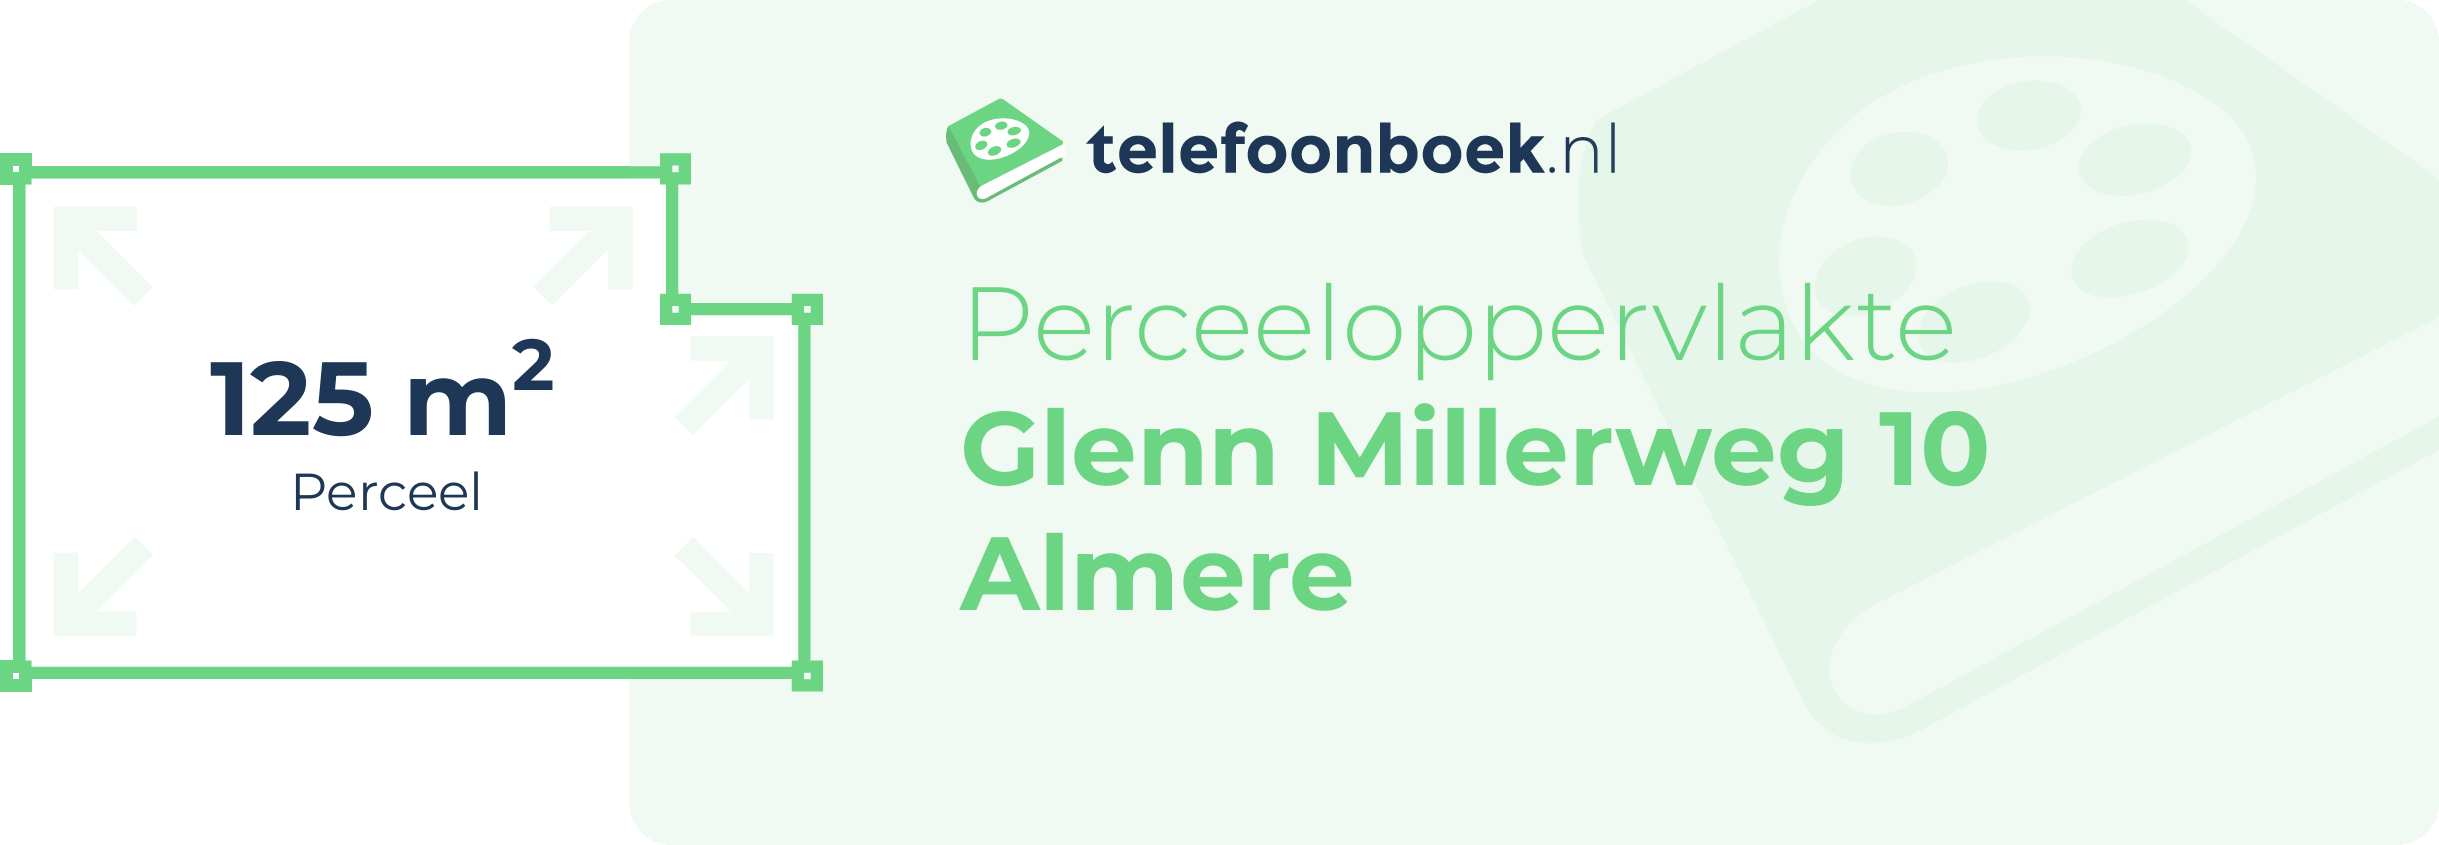 Perceeloppervlakte Glenn Millerweg 10 Almere